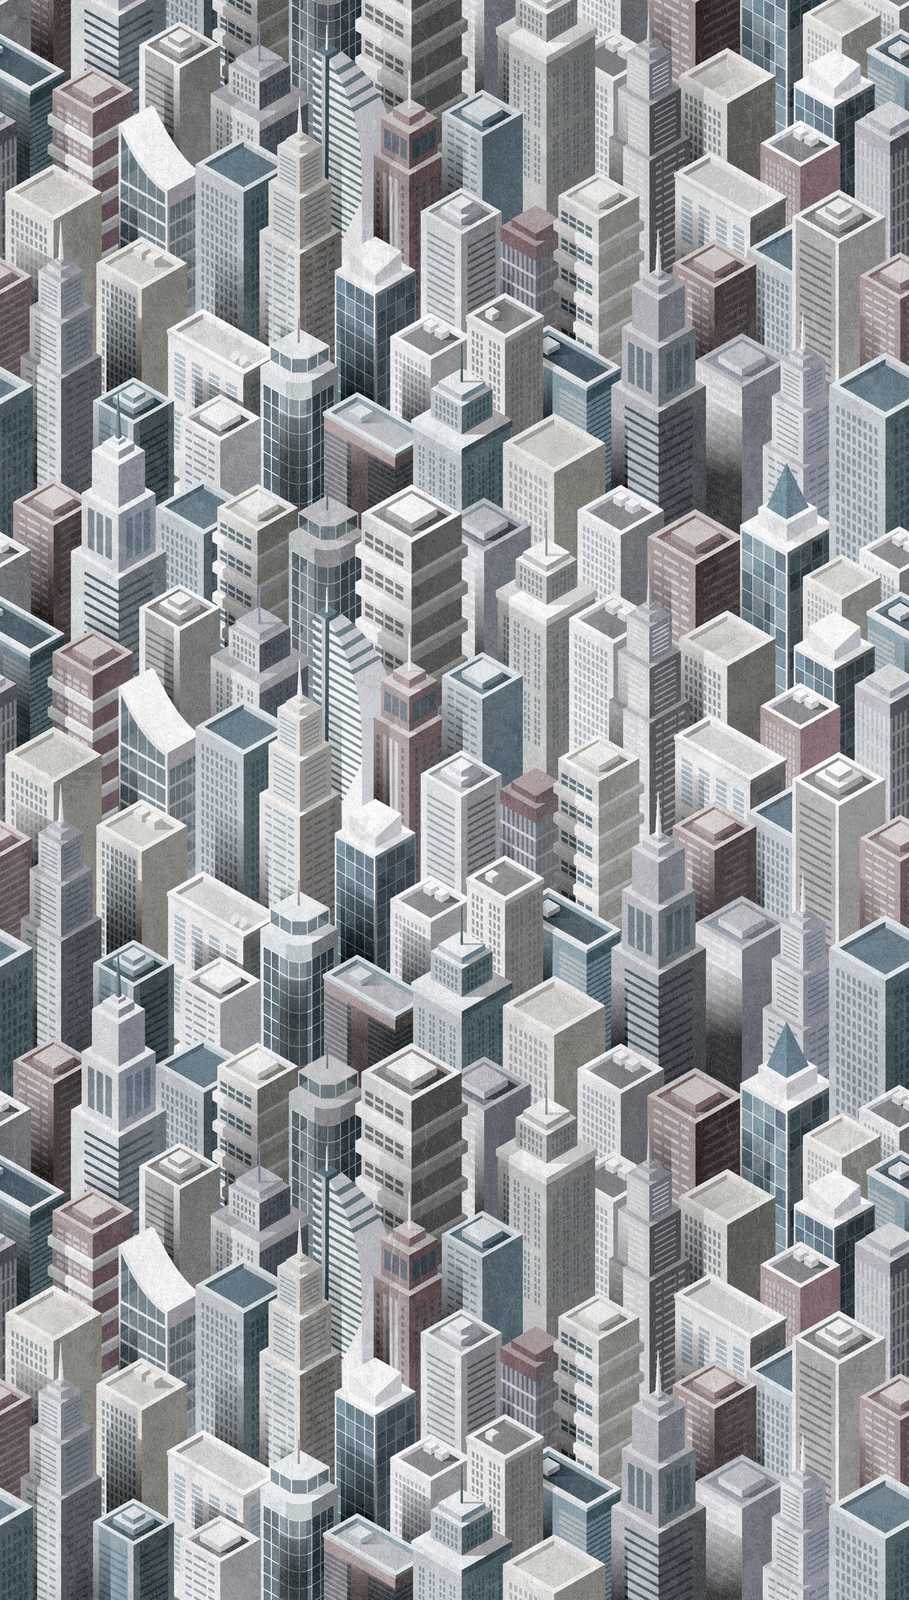             behang nieuwigheid - motief behang wolkenkrabber 3D patroon stedelijk
        